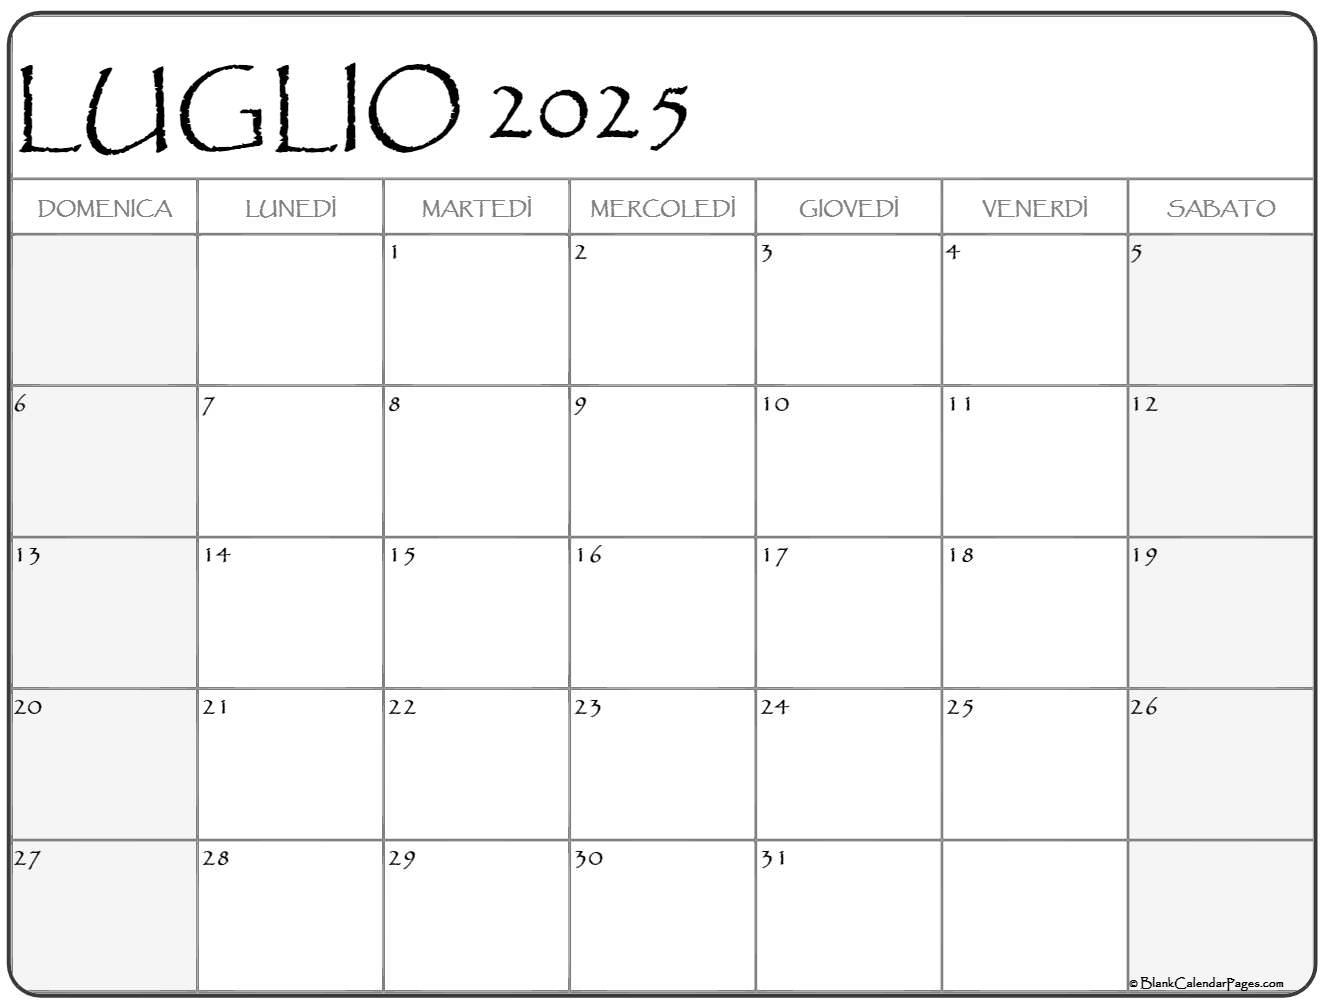 luglio-2025-calendario-gratis-italiano-calendario-luglio